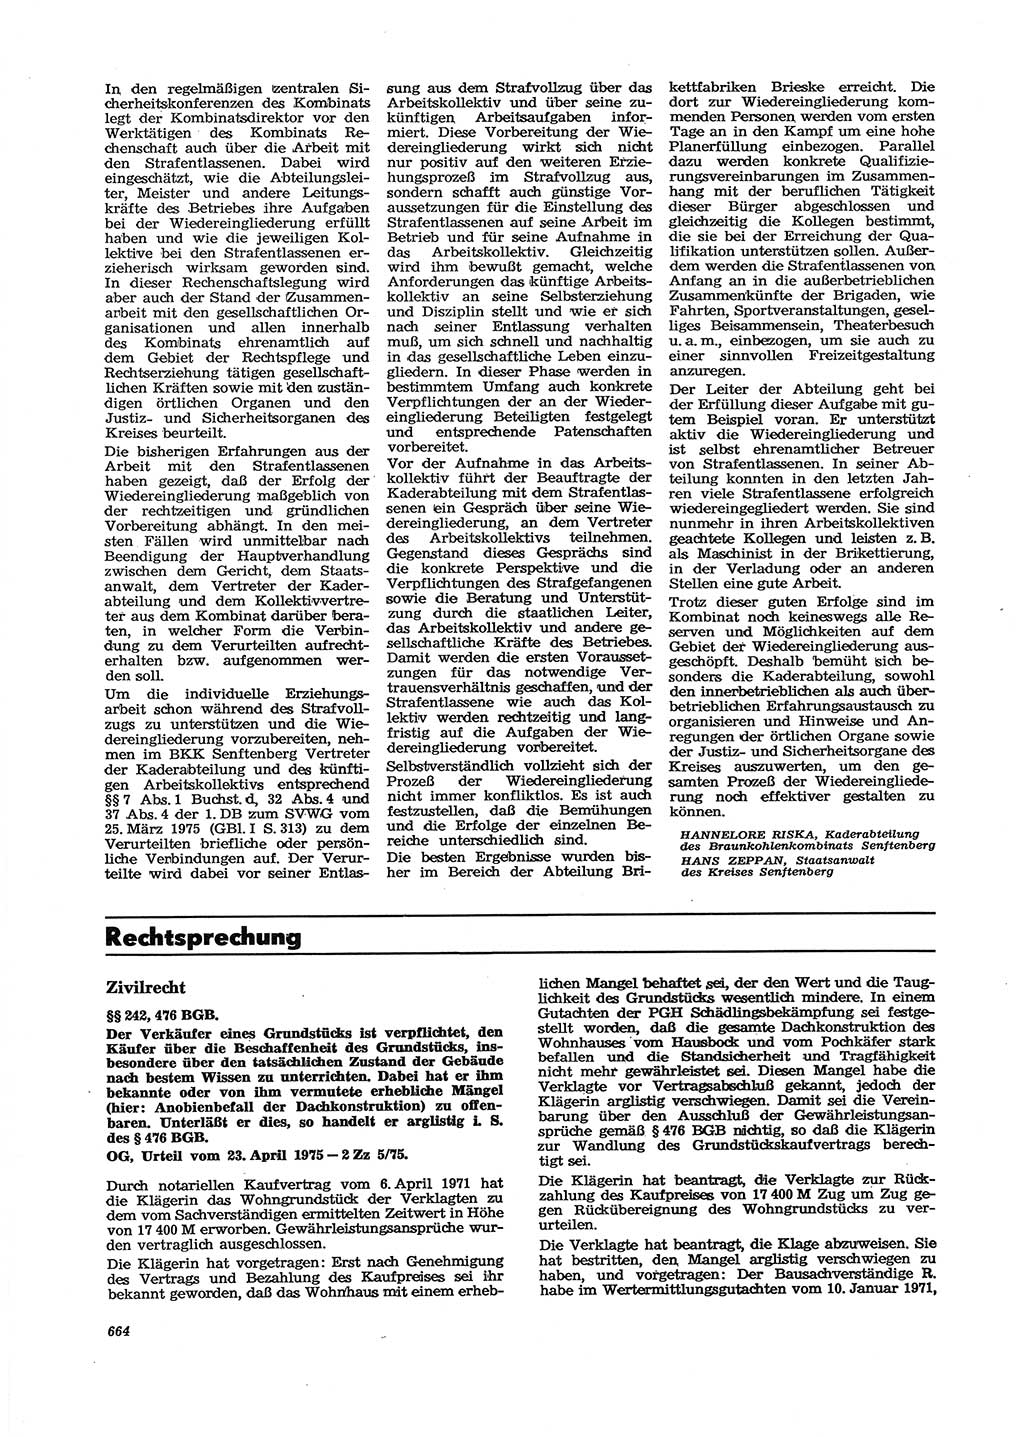 Neue Justiz (NJ), Zeitschrift für Recht und Rechtswissenschaft [Deutsche Demokratische Republik (DDR)], 29. Jahrgang 1975, Seite 664 (NJ DDR 1975, S. 664)